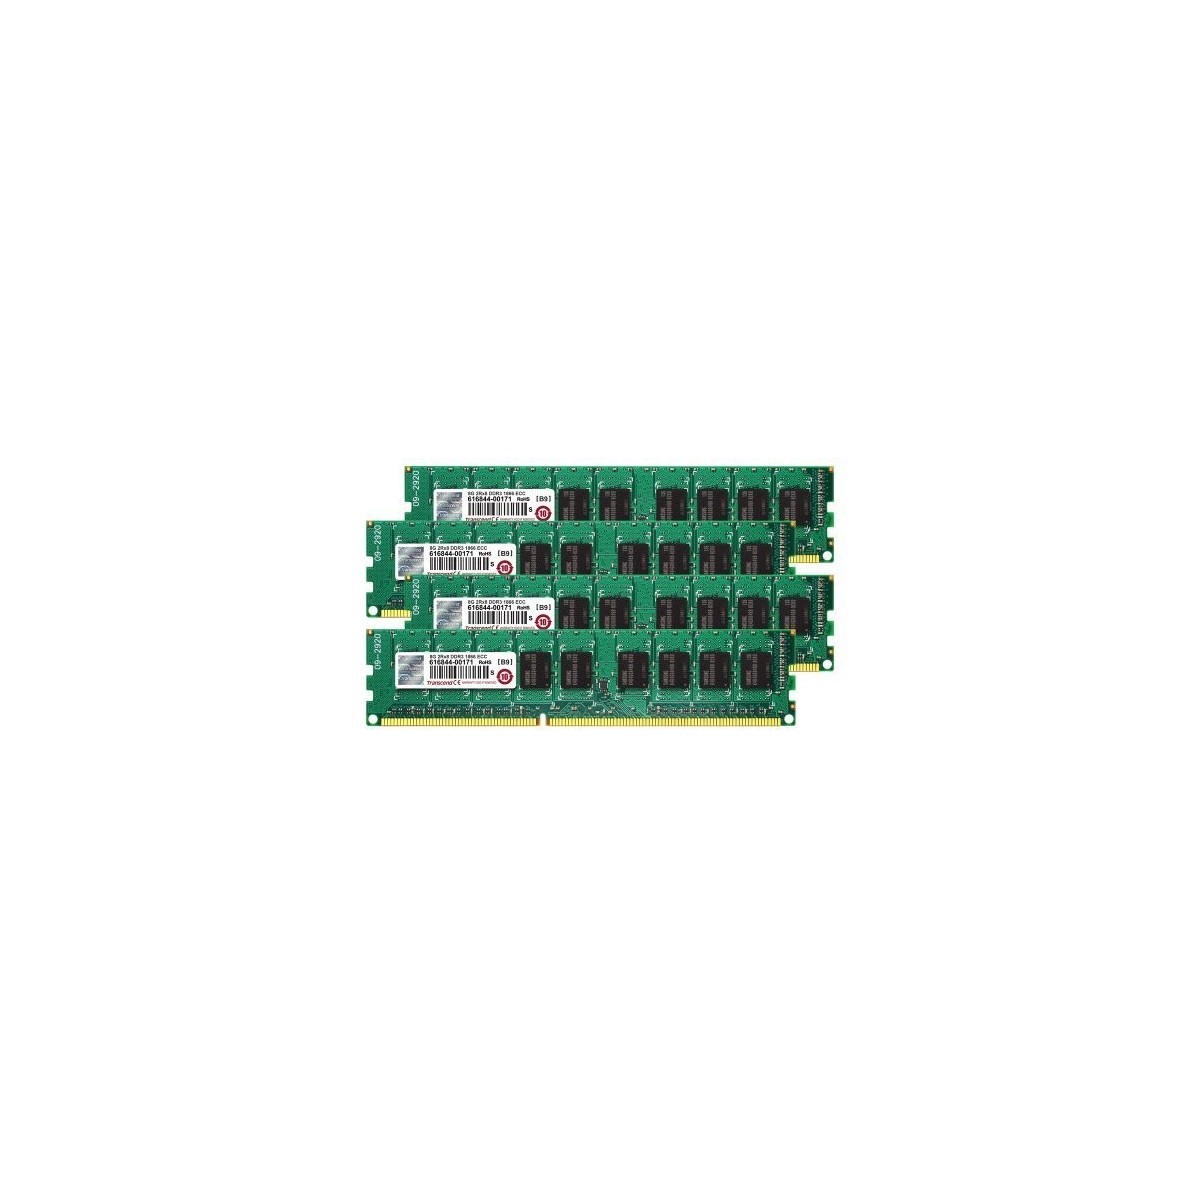 Transcend JetRam TS32GJMA545H - 32 GB - 4 x 8 GB - DDR3 - 1866 MHz - 240-pin DIMM - Green